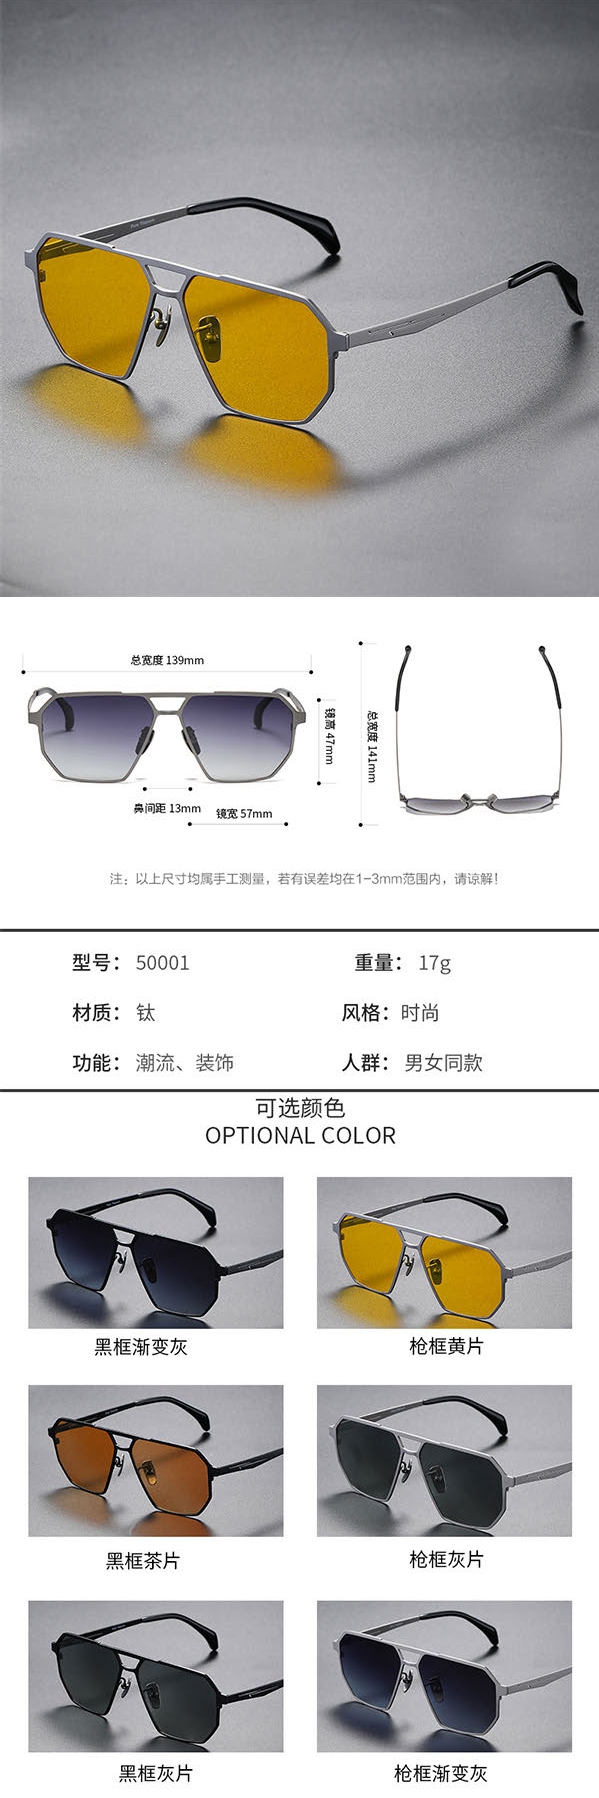 Pure titanium & metal sunglasses in top quality italy design S4198050